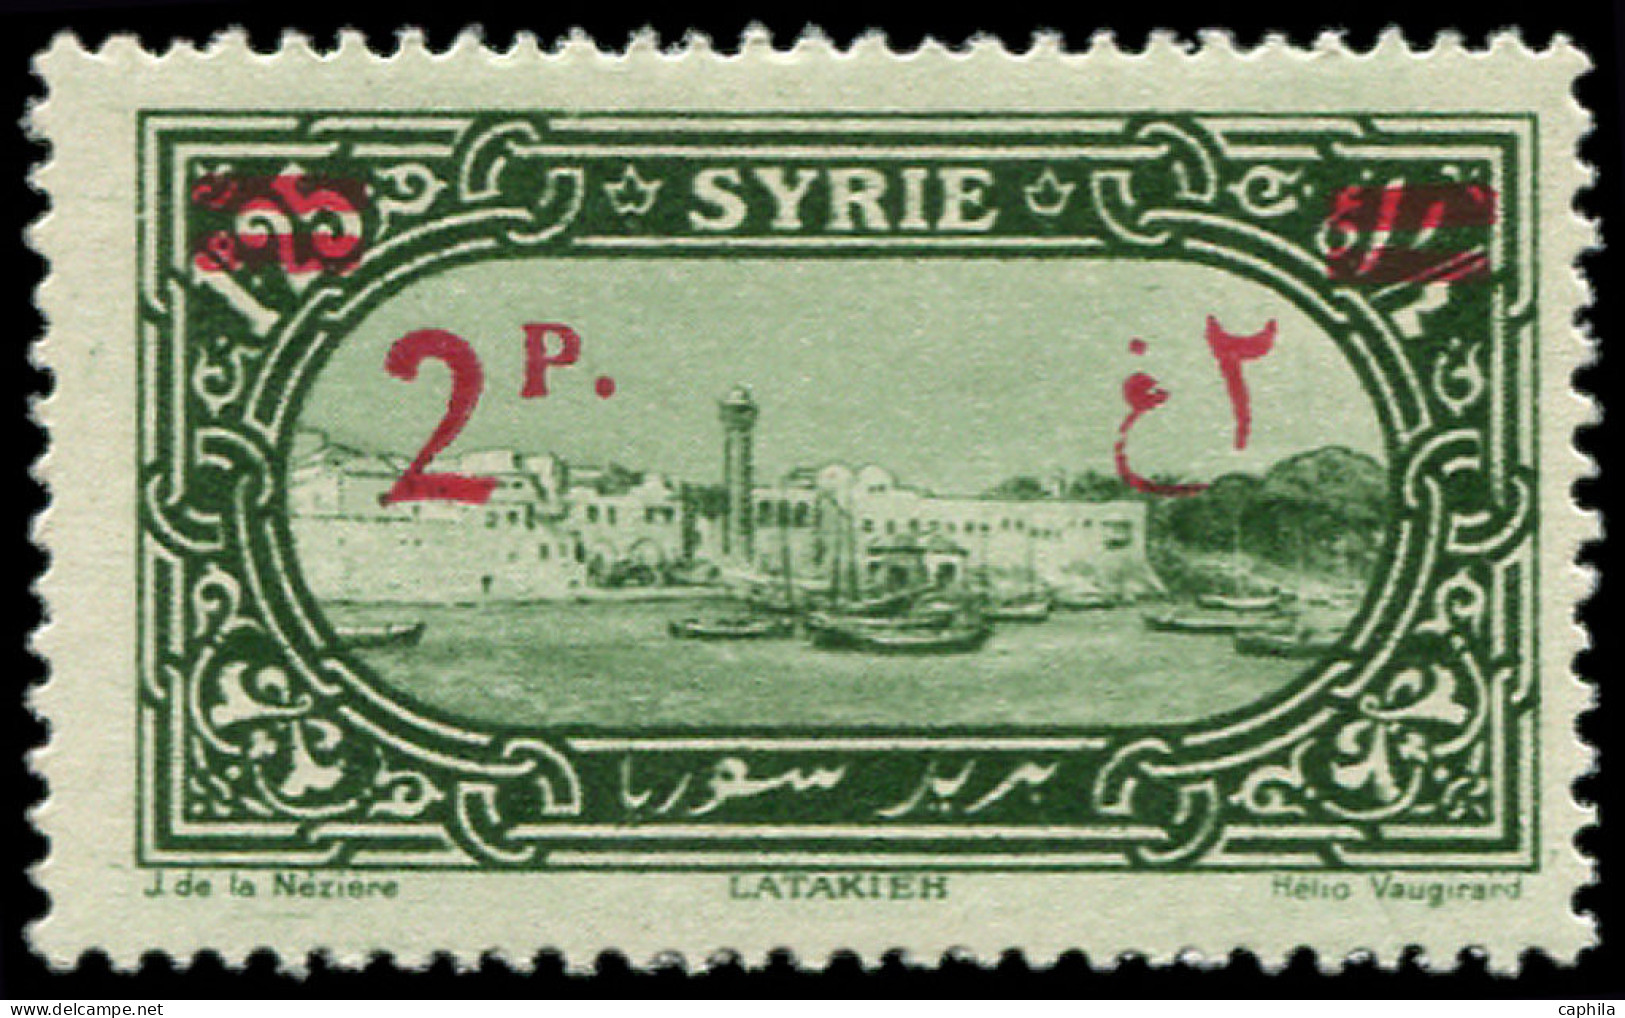 SYRIE Poste * - 189c, Surcharge Recto-verso: 2p. S. 1p25 Vert - Cote: 90 - Ongebruikt